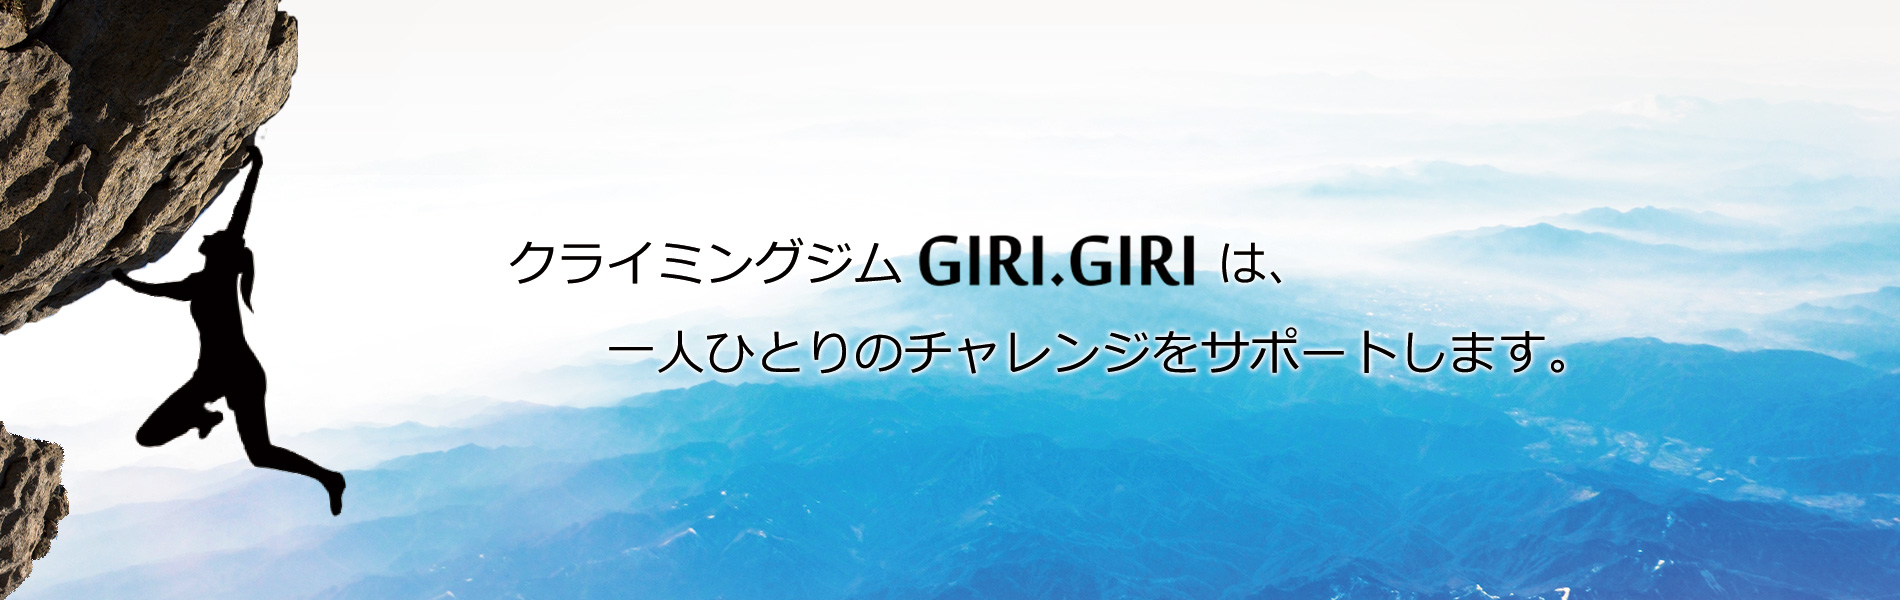 クライミングジムGIRI.GIRIは、一人ひとりのチェレンジをサポートします。